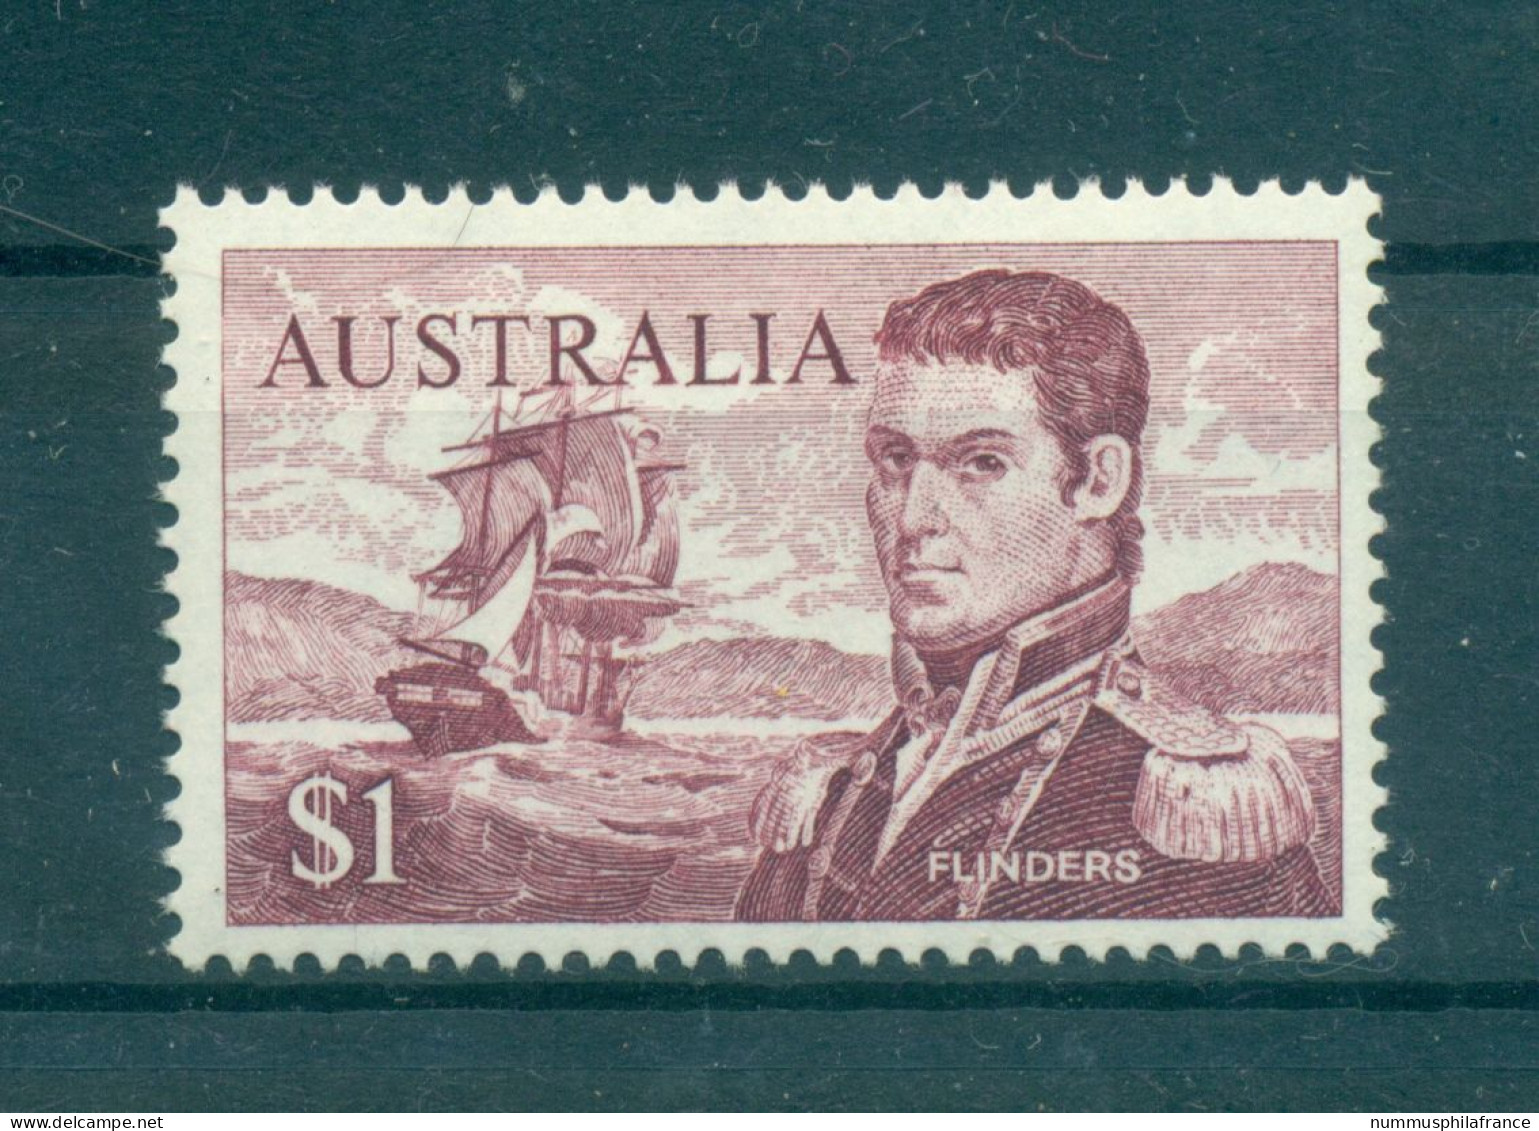 Australie 1966-70 - Y & T N. 338 - Série Courante (Michel N. 377 A) - Mint Stamps